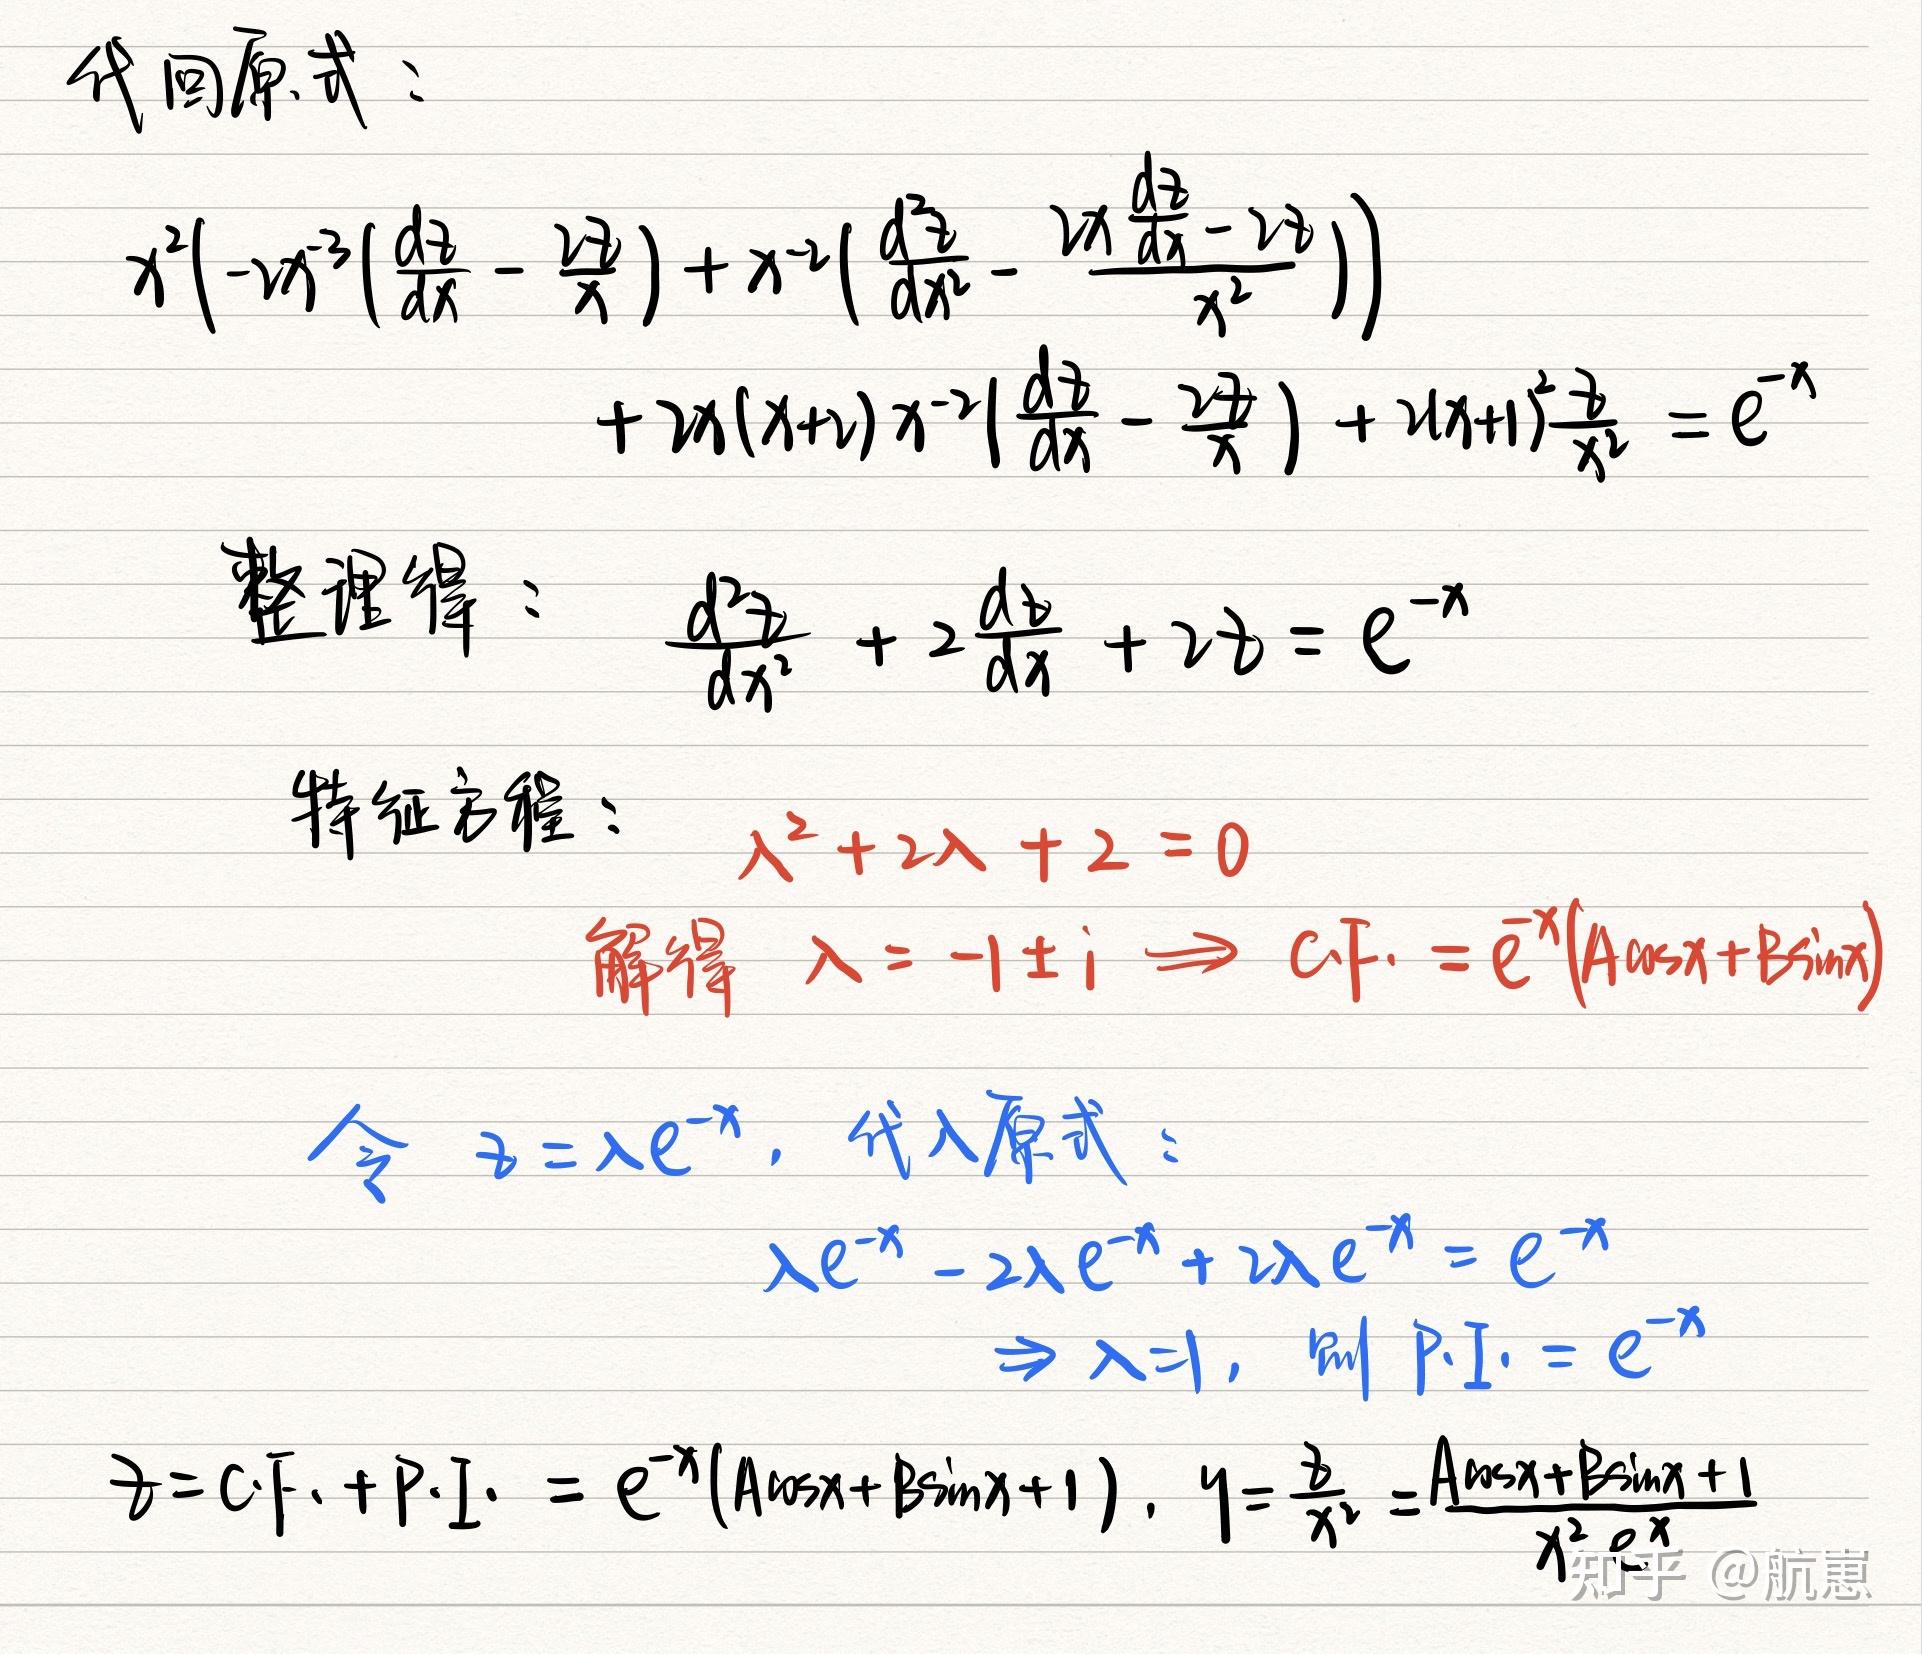 考研数学-线性代数-同解方程组 - 哔哩哔哩